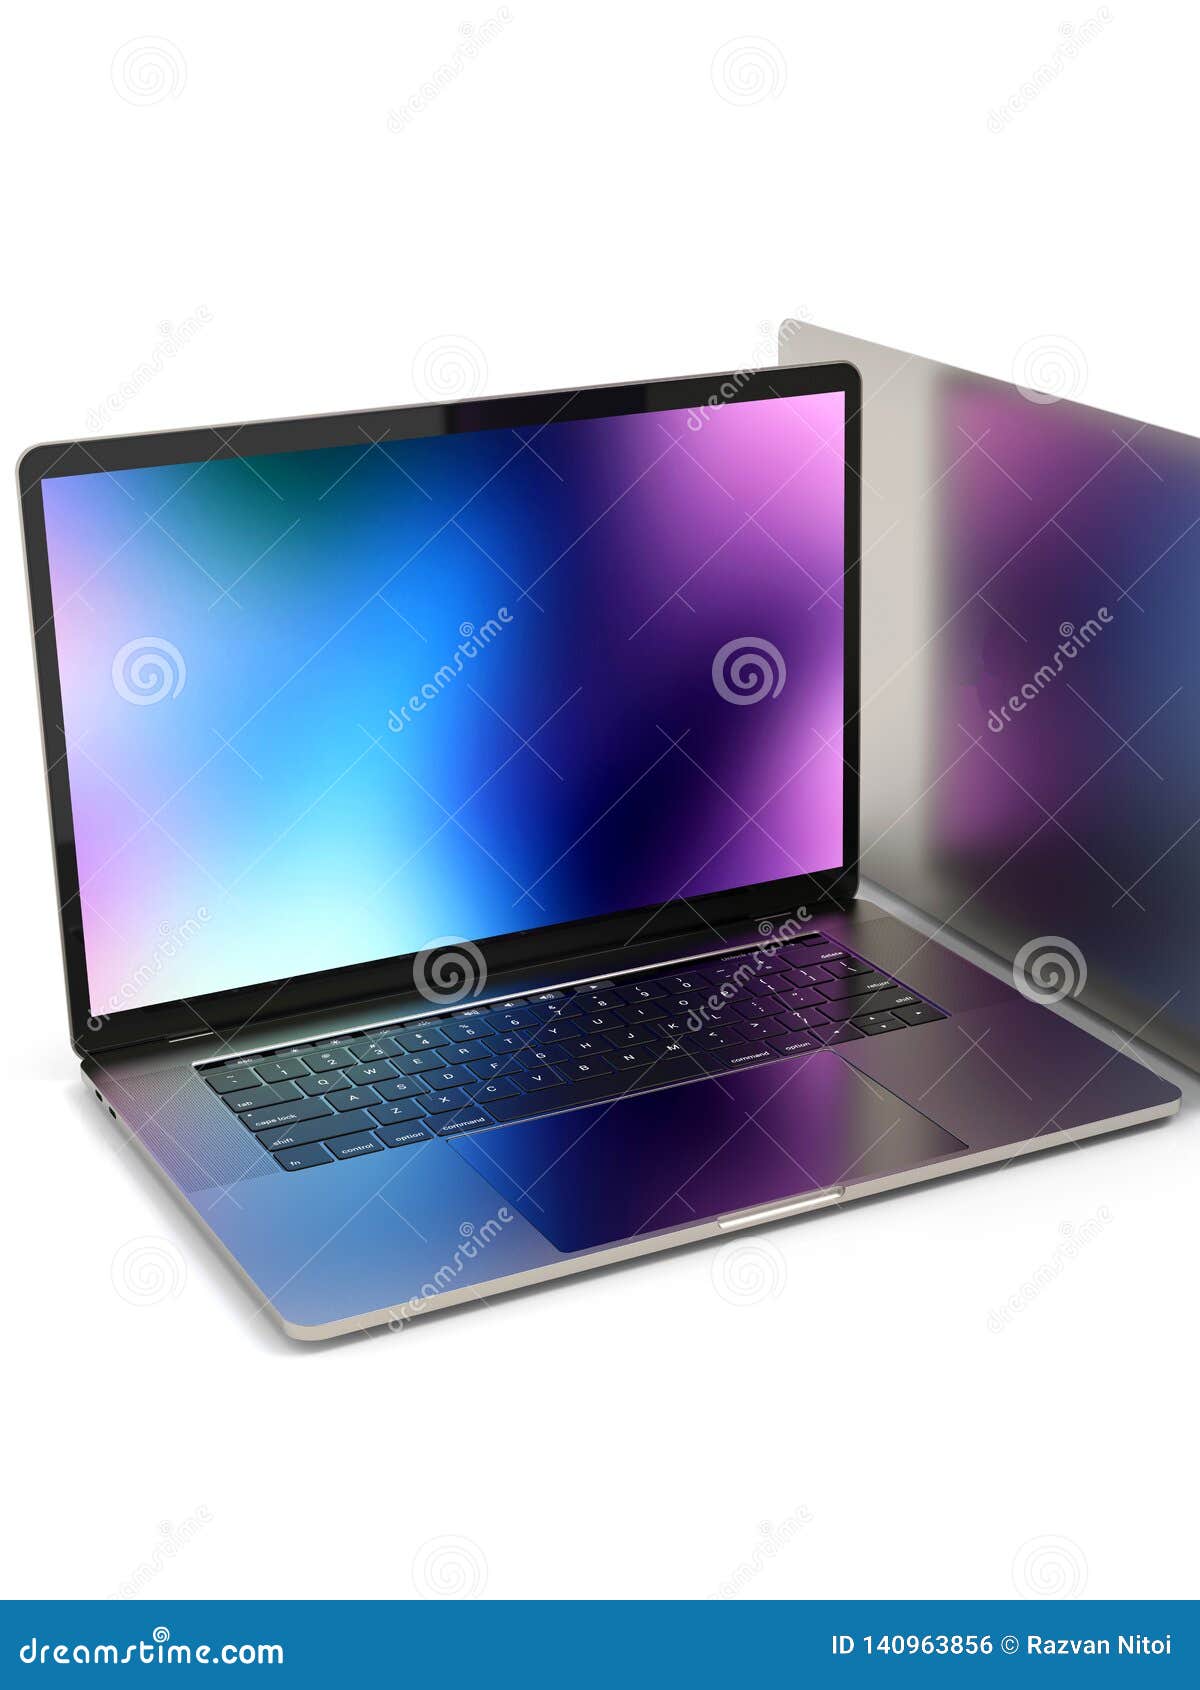 Tìm kiếm một chiếc laptop đẳng cấp và đầy phong cách? MacBook Pro chính là lựa chọn hoàn hảo cho bạn. Cùng tải những hình nền đẹp mắt để tôn lên vẻ đẹp độc đáo của thiết bị của bạn.